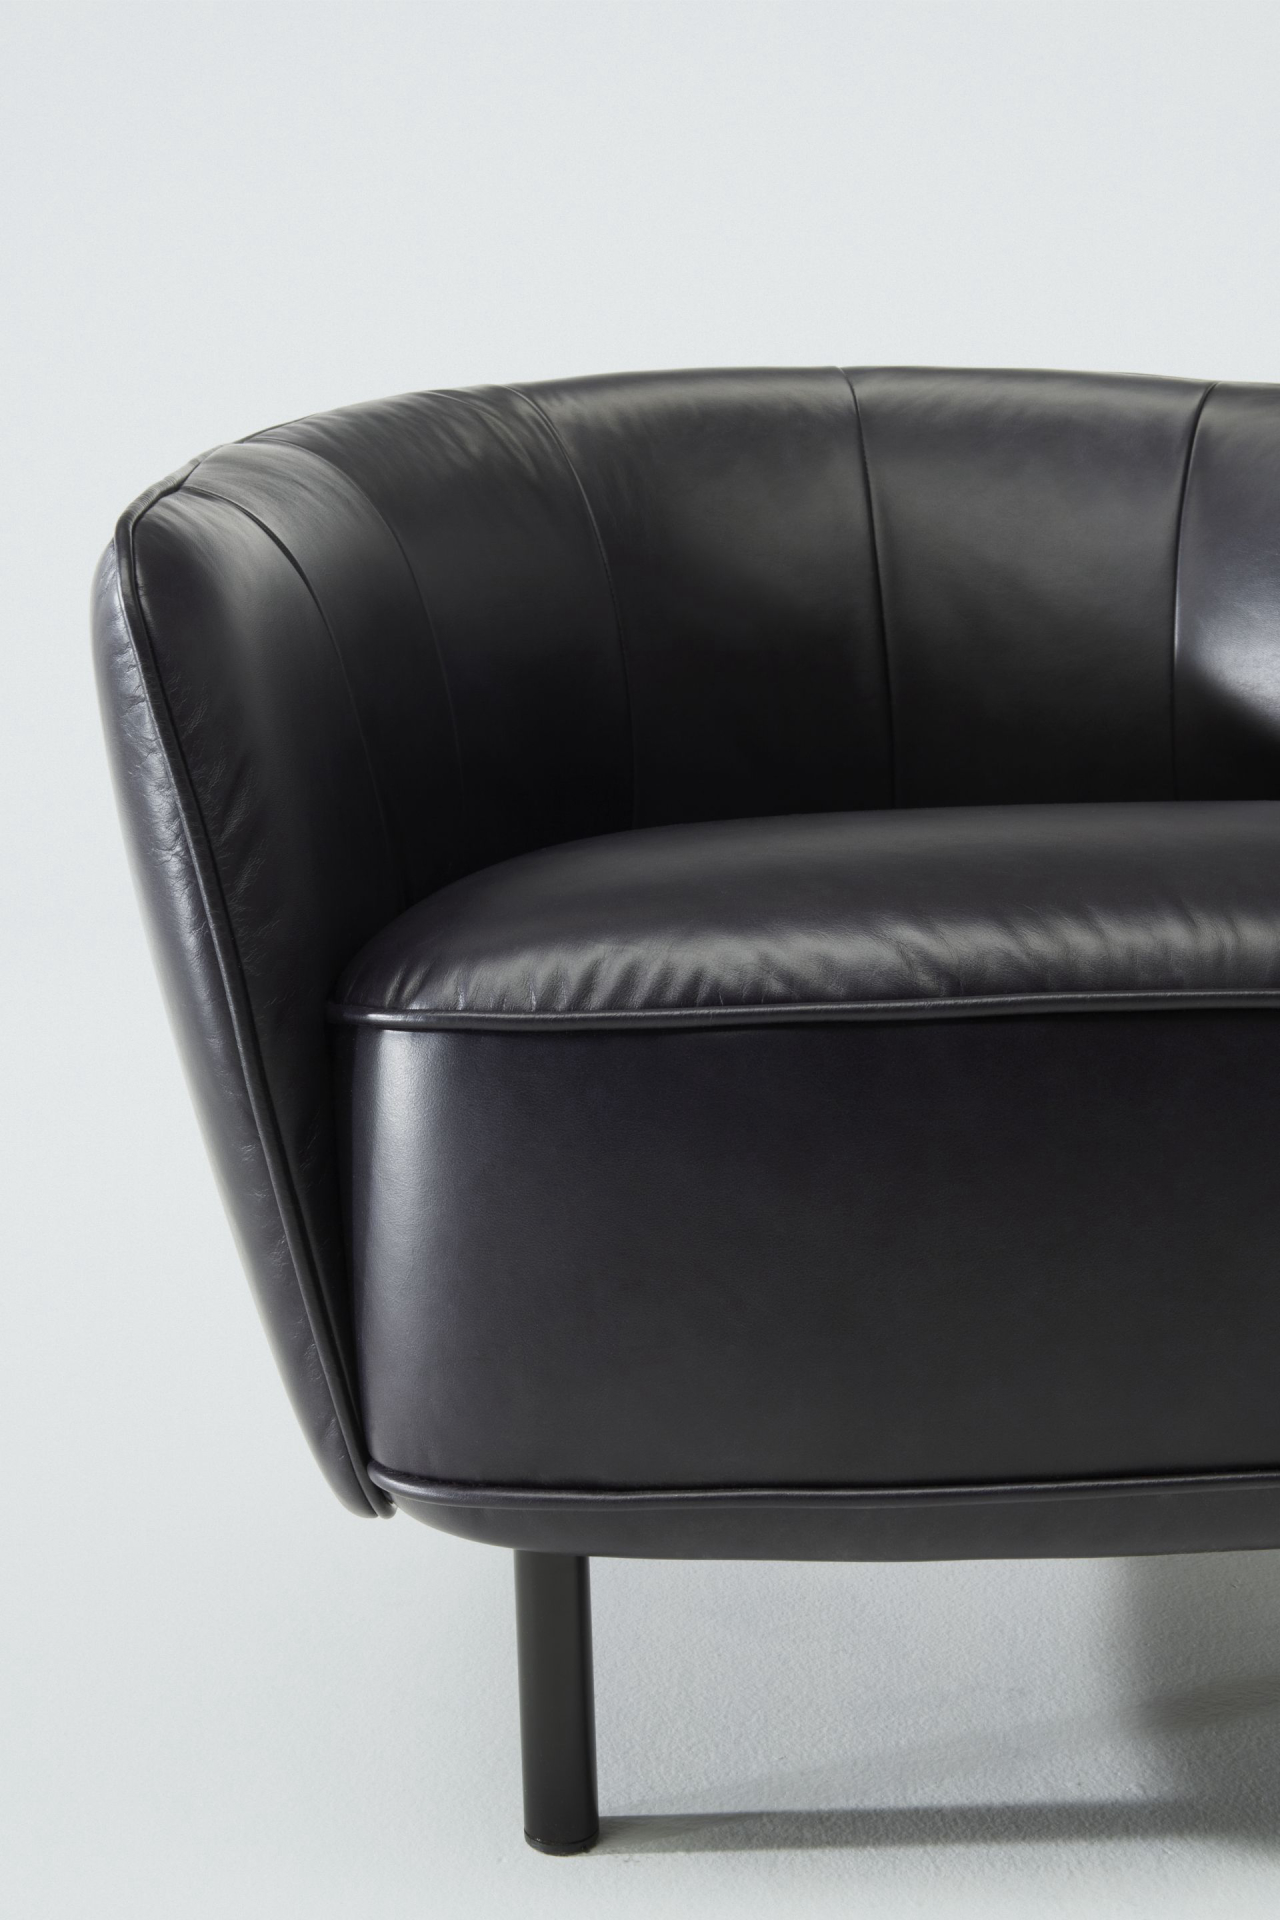 Monroe Black Chair, assinada pela Furf Design Studio para Natuzzi Editions. Foto: divulgação